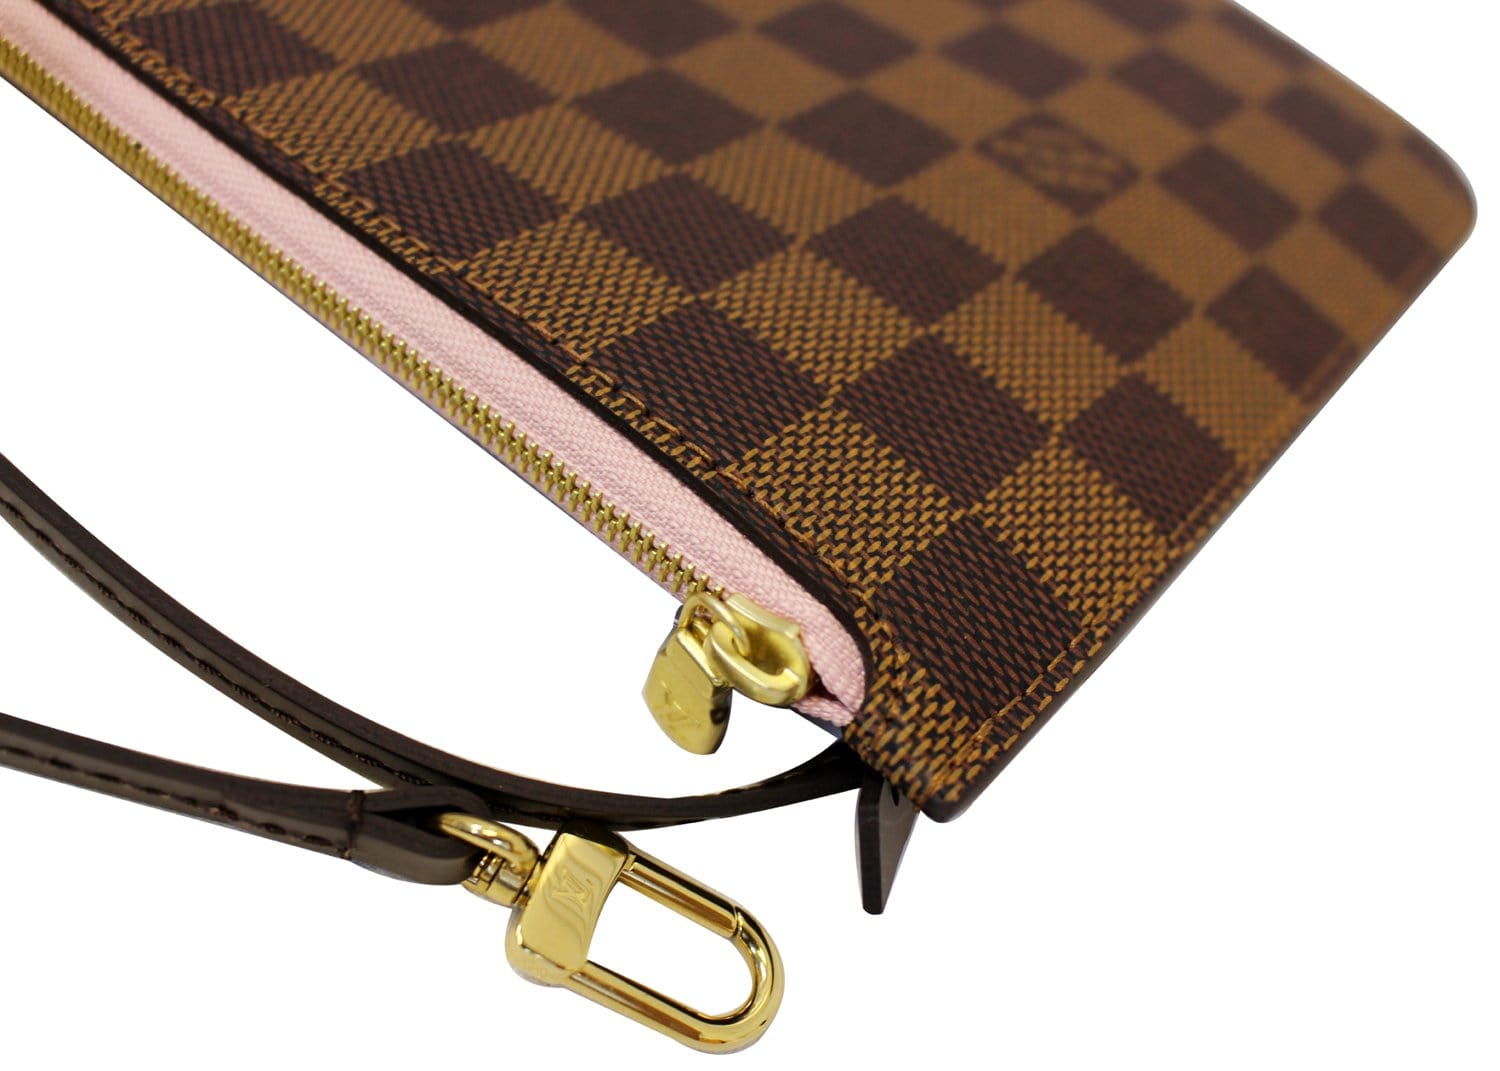 Louis Vuitton Damier Canvas Neverfull Pochette Zippered Clutch Bag